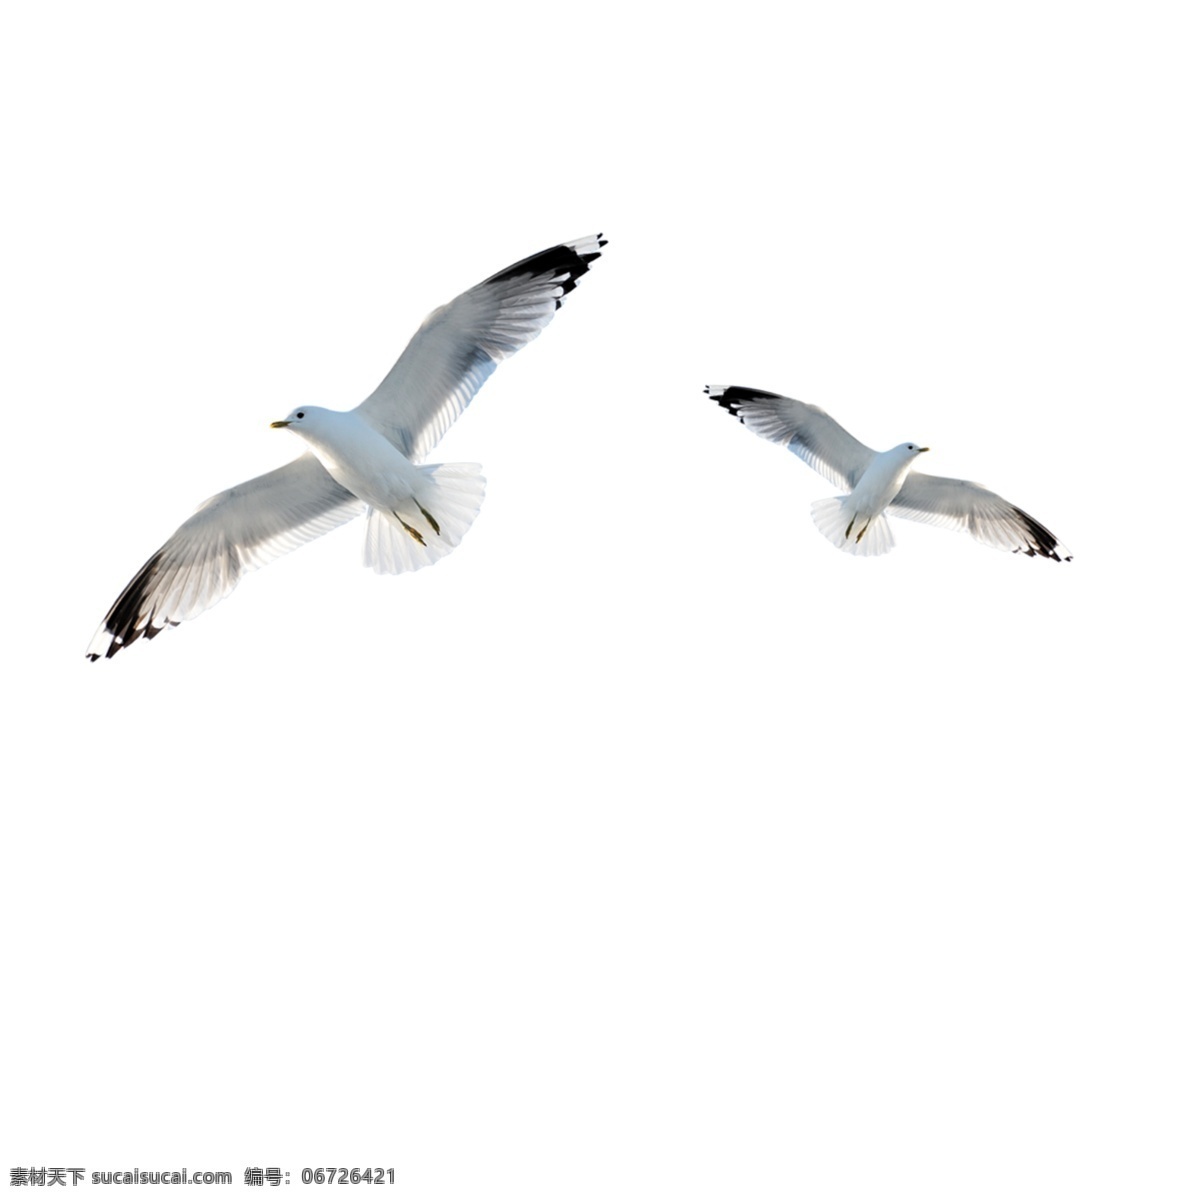 海鸥 水鸟 海鸟 飞翔的鸟 大雁 野鸭 天鹅 白鹤 鹅 动物 鸟类 飞鸟 生物世界